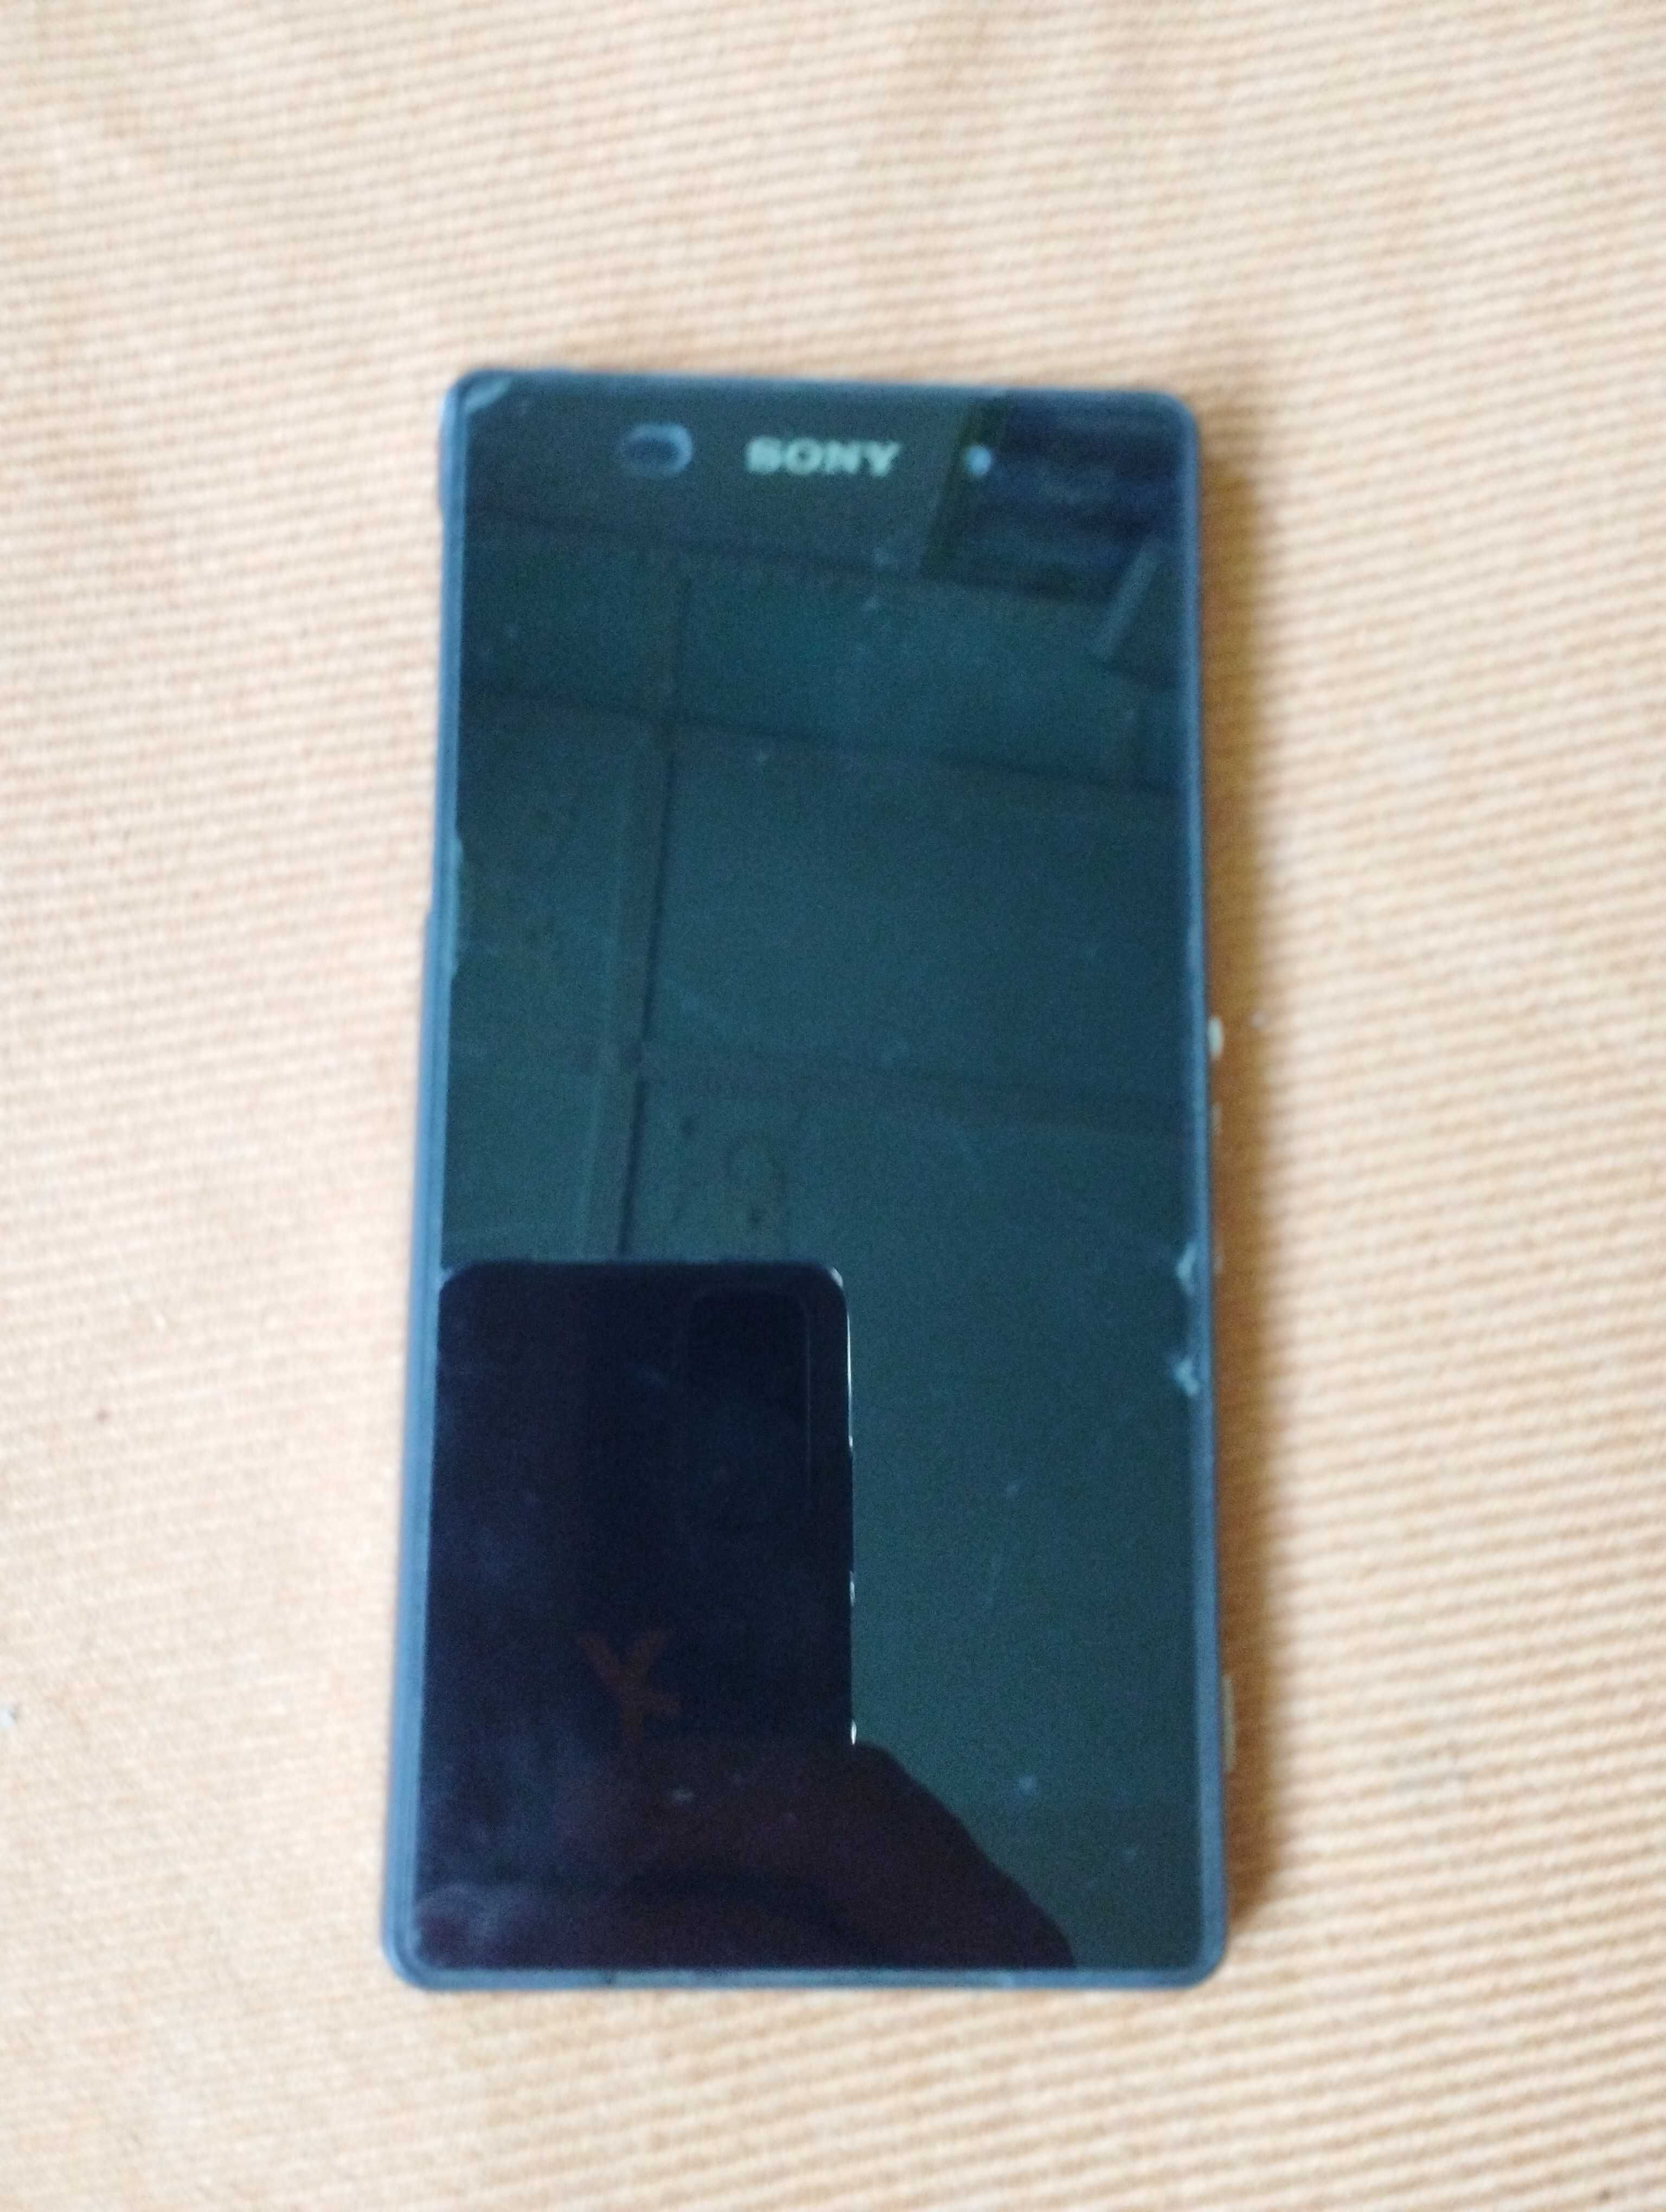 Продается телефон SONY XPERIA Z2 б/у для запчасти